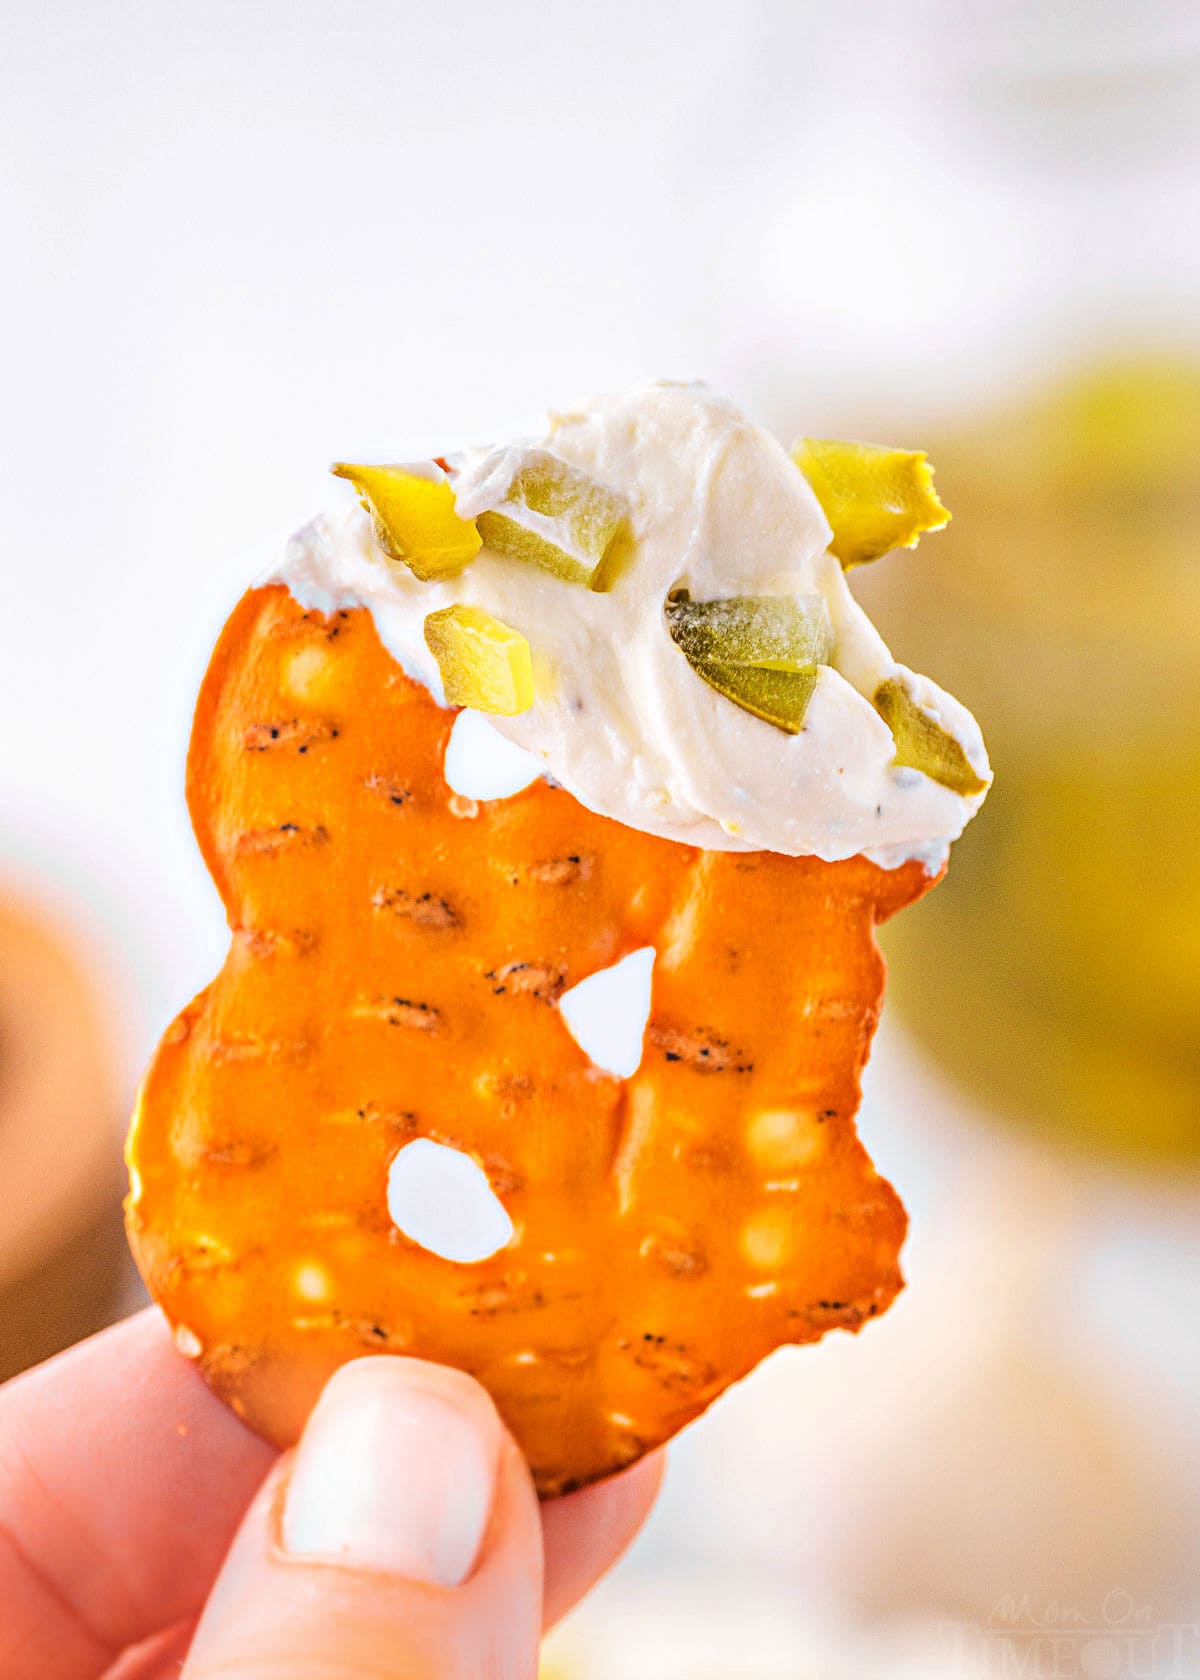 Il chip di pretzel viene trattenuto con una salsa di sottaceti all'aneto all'estremità del pretzel.